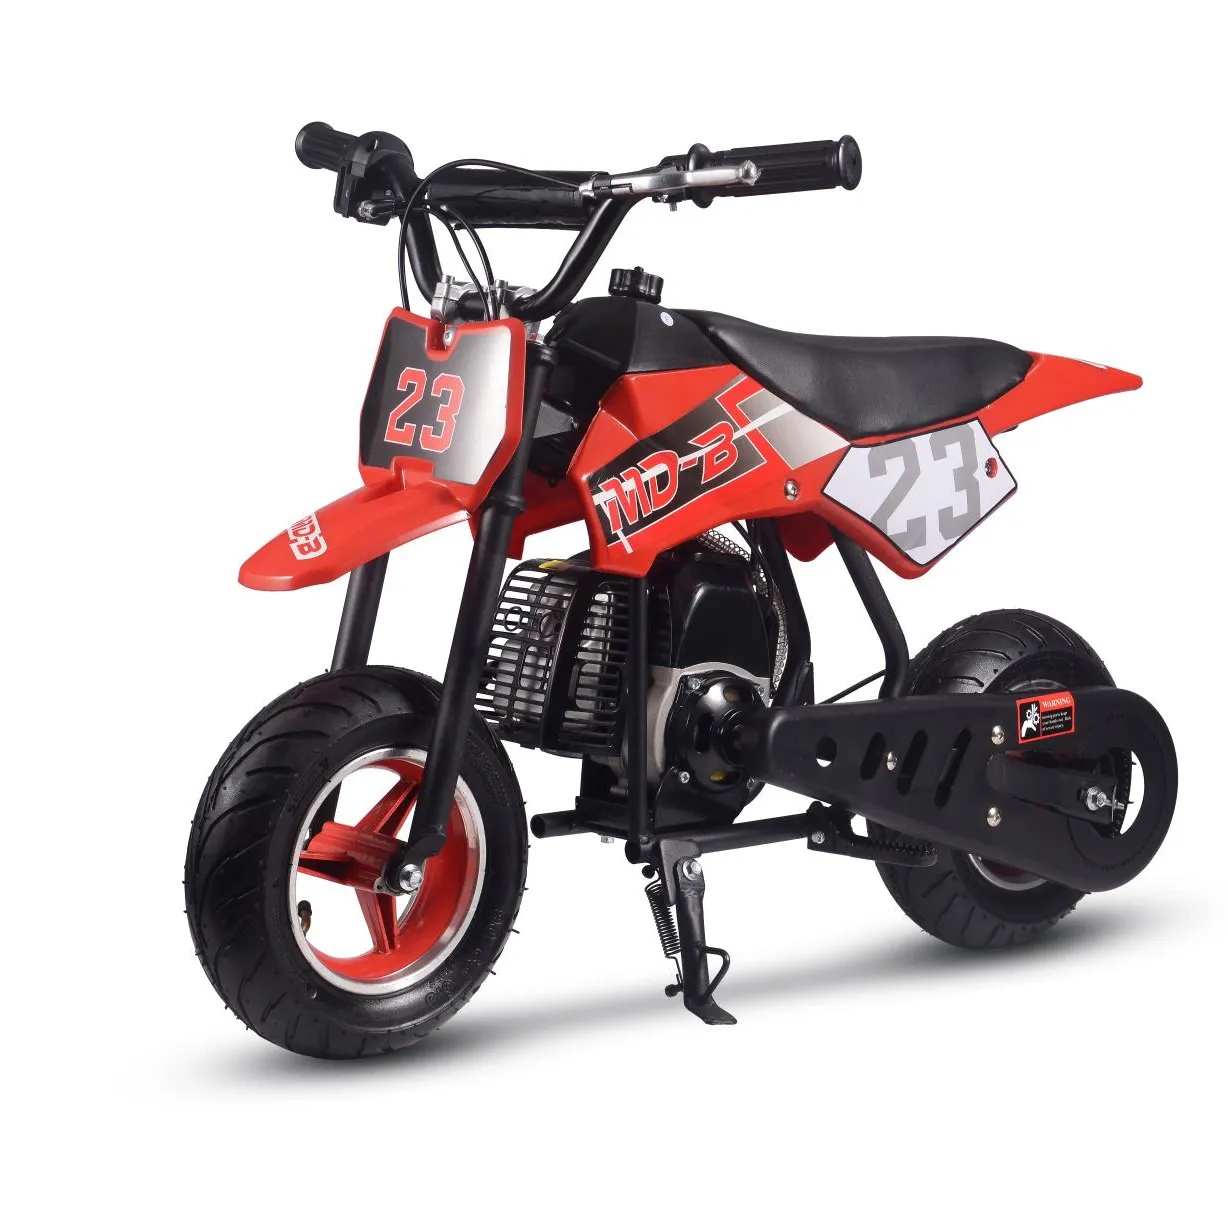 Thời Trang Mới 2-Đột Quỵ Mini Dirt Bike Kéo Bắt Đầu Gas Mini Xe Máy 49cc Cho Trẻ Em